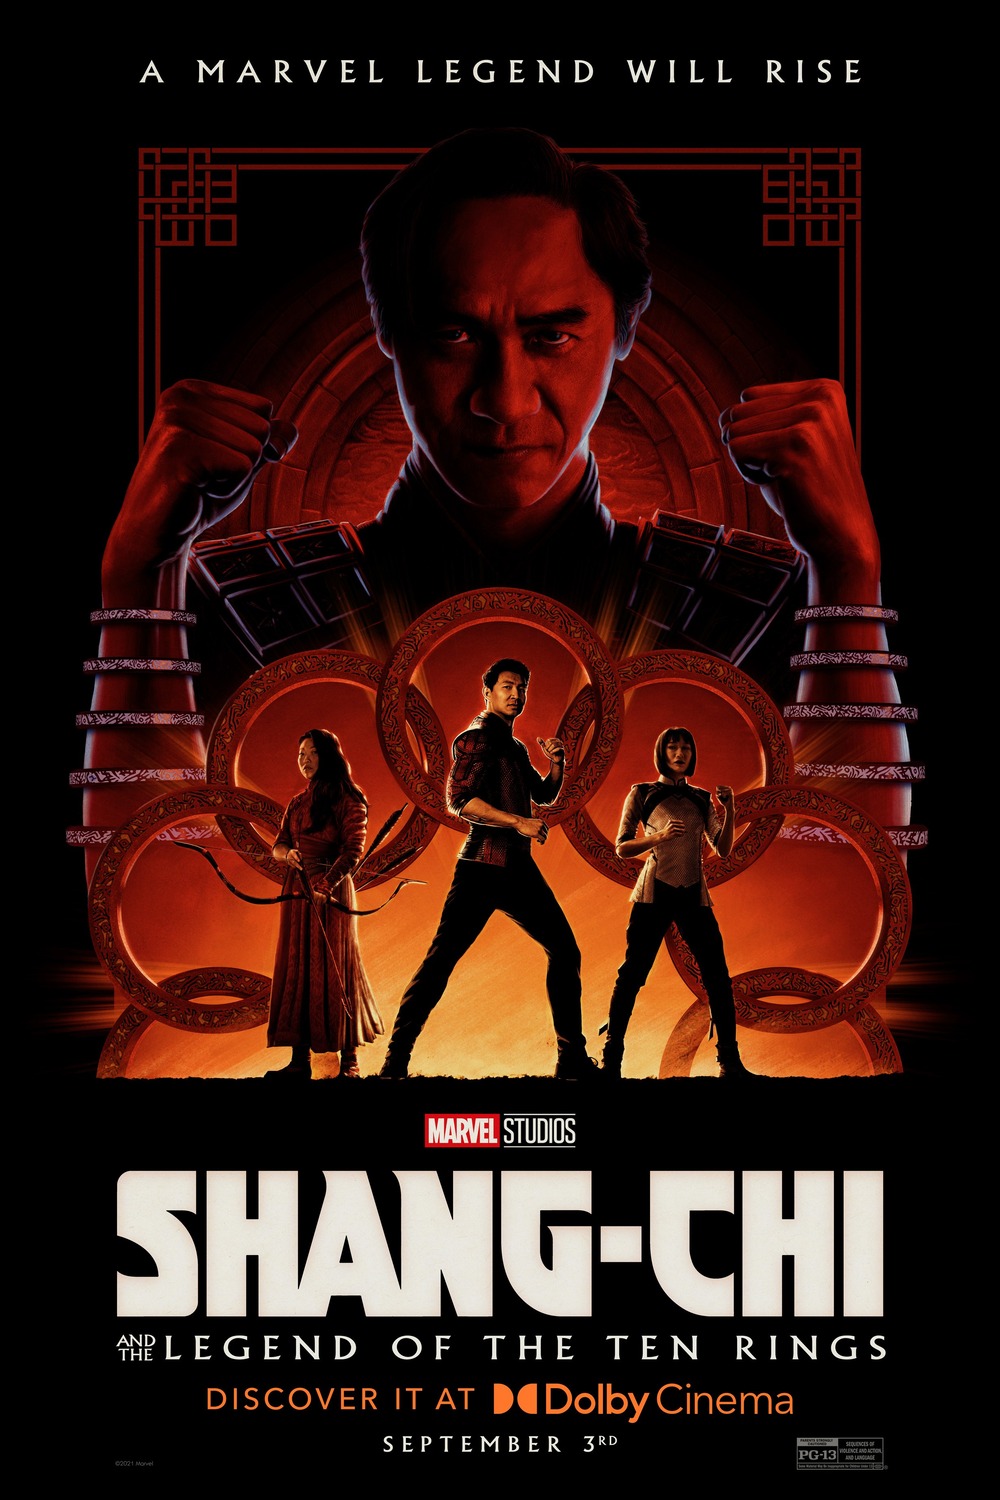 Movie shang-chi Watch ‘Shang